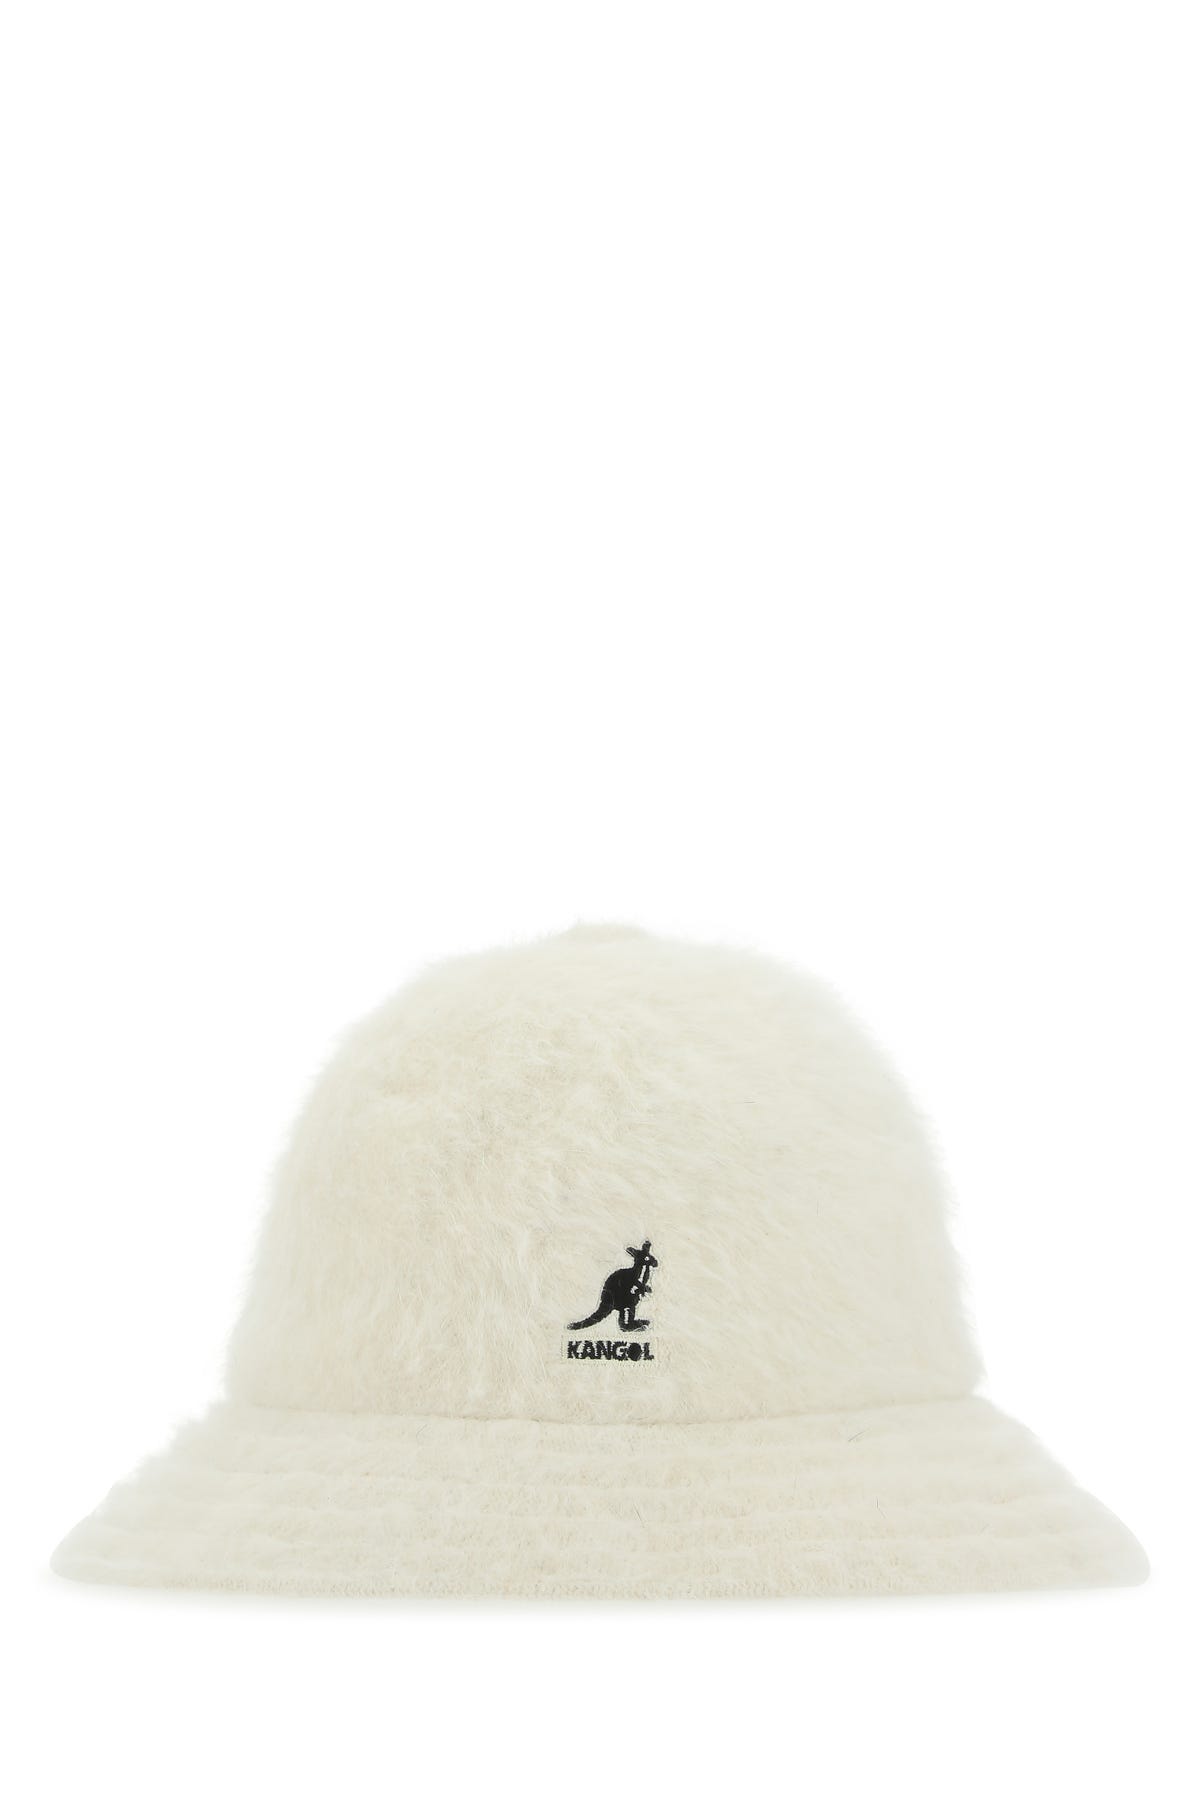 Kangol Hats | ModeSens